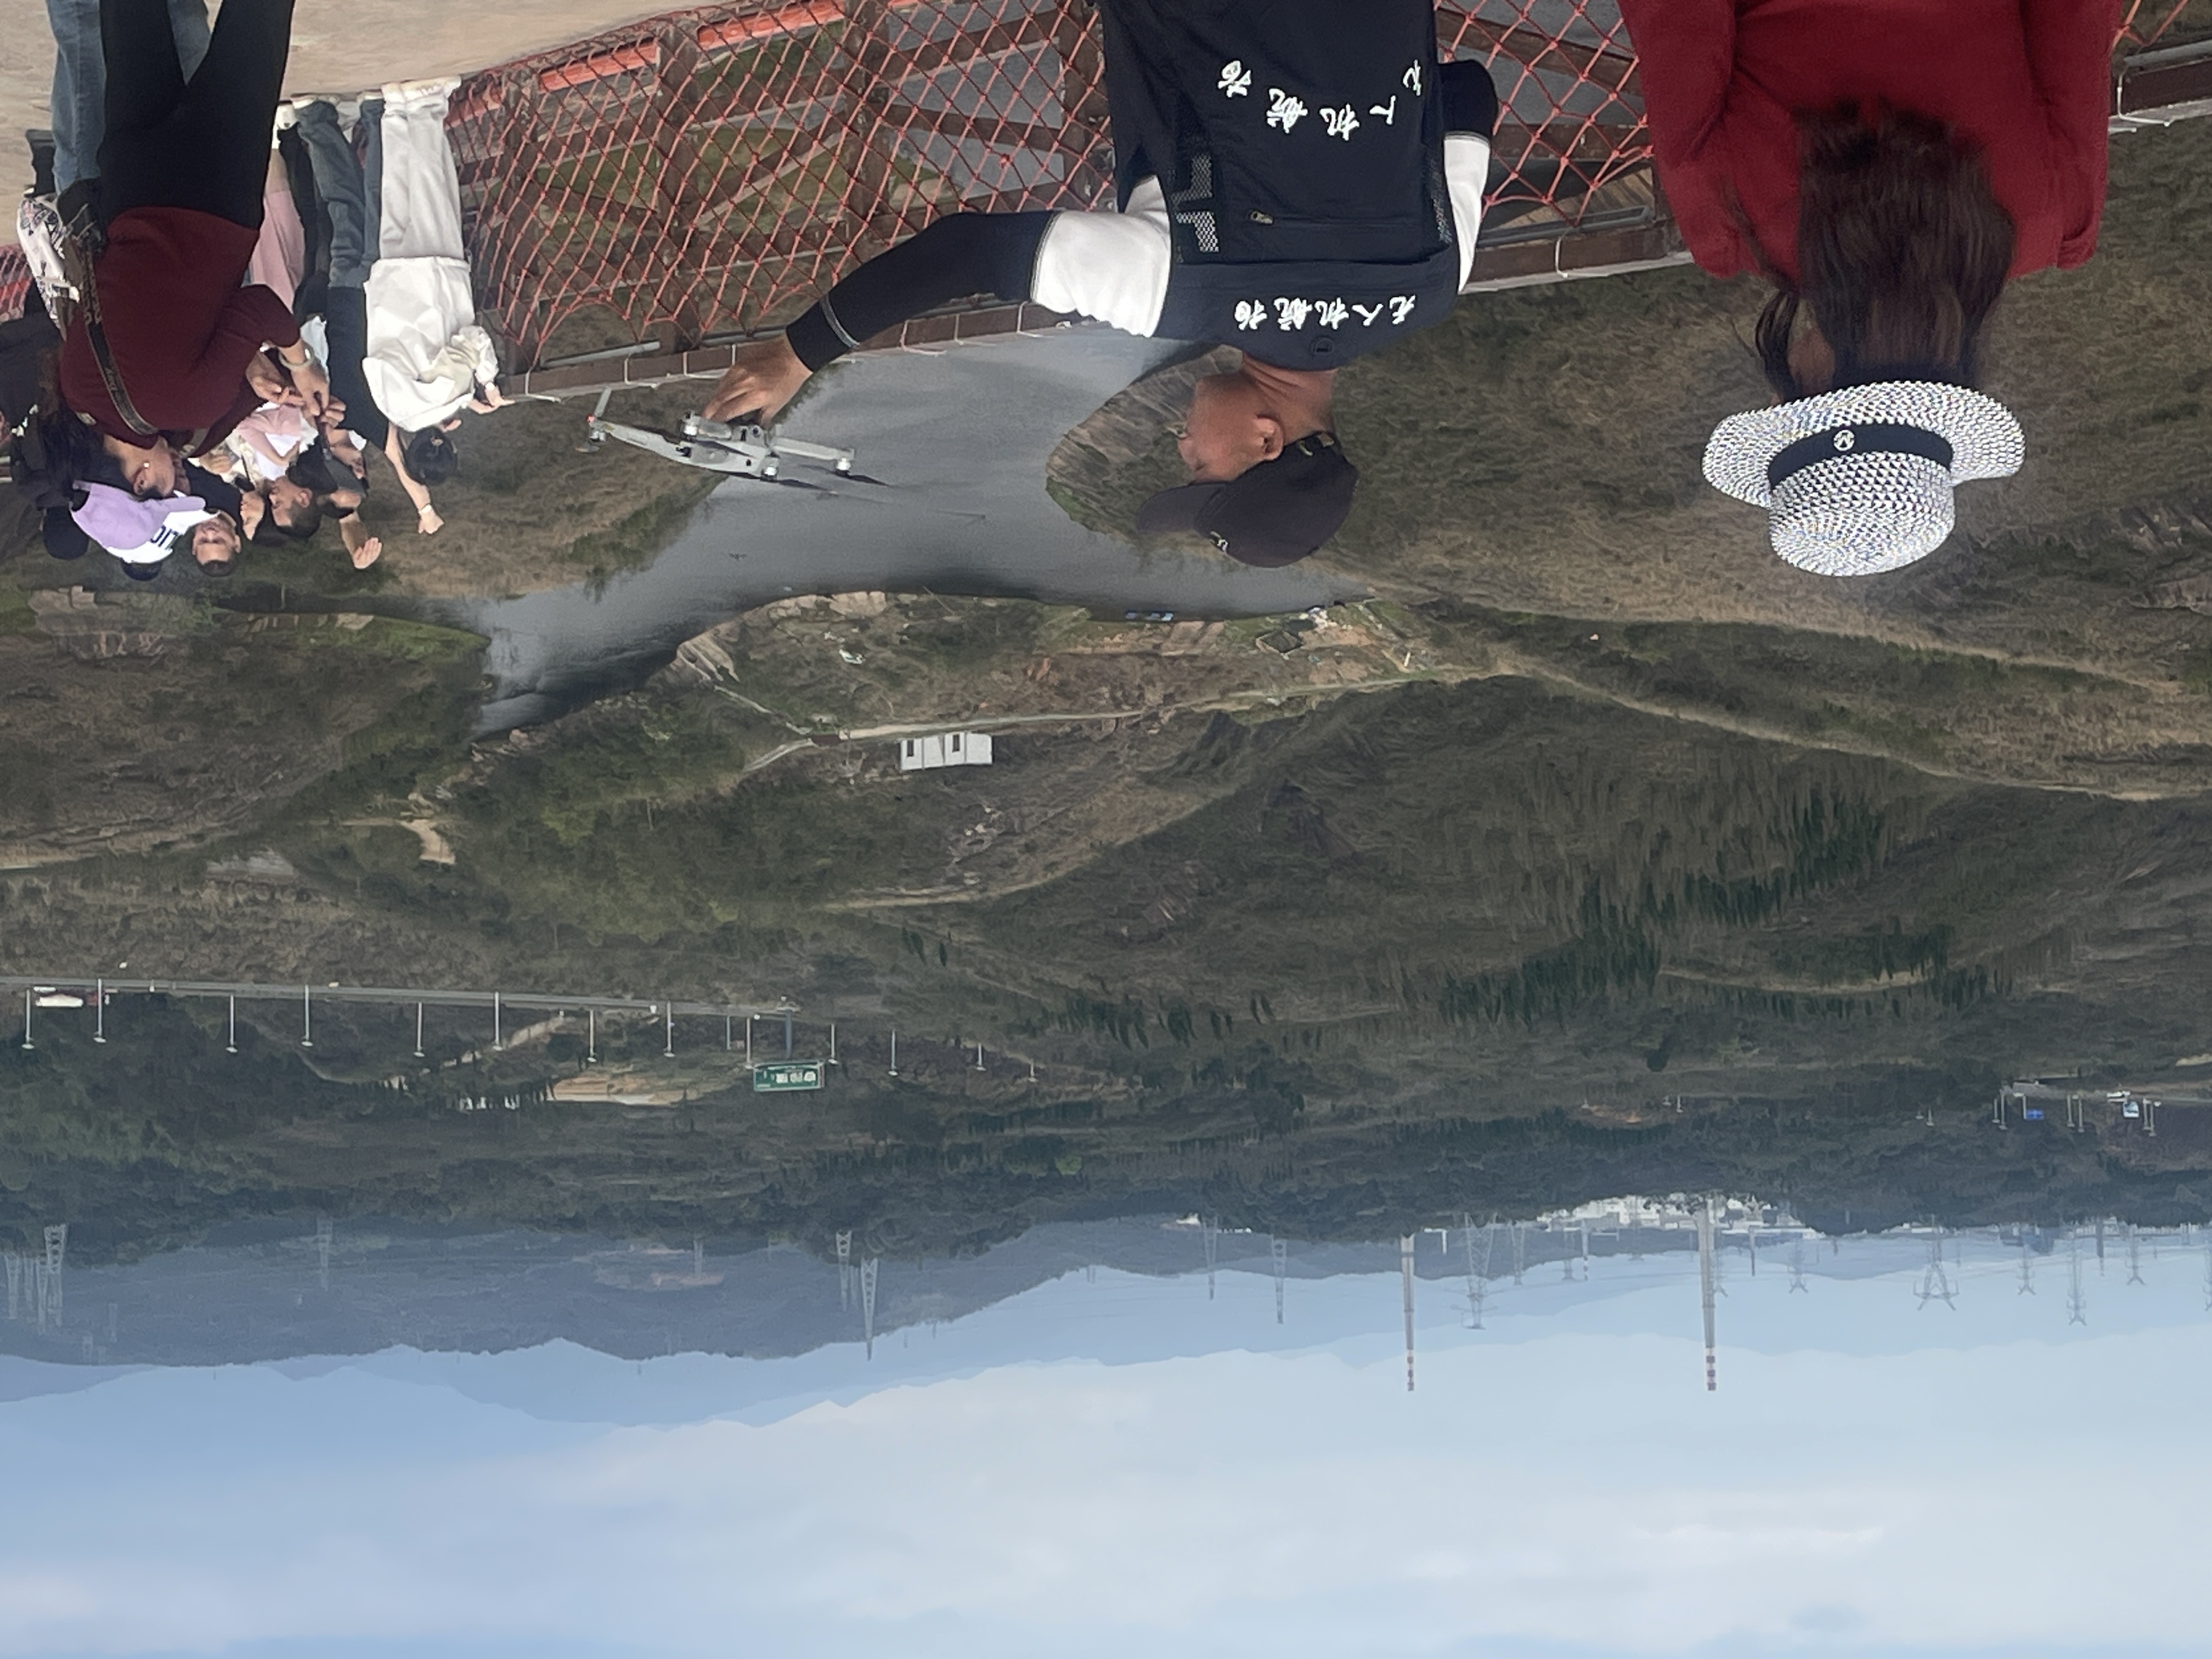 無人機航拍攝影師正在喚回無人機，讓遊客鑑賞畫面。圖/陳素貞攝